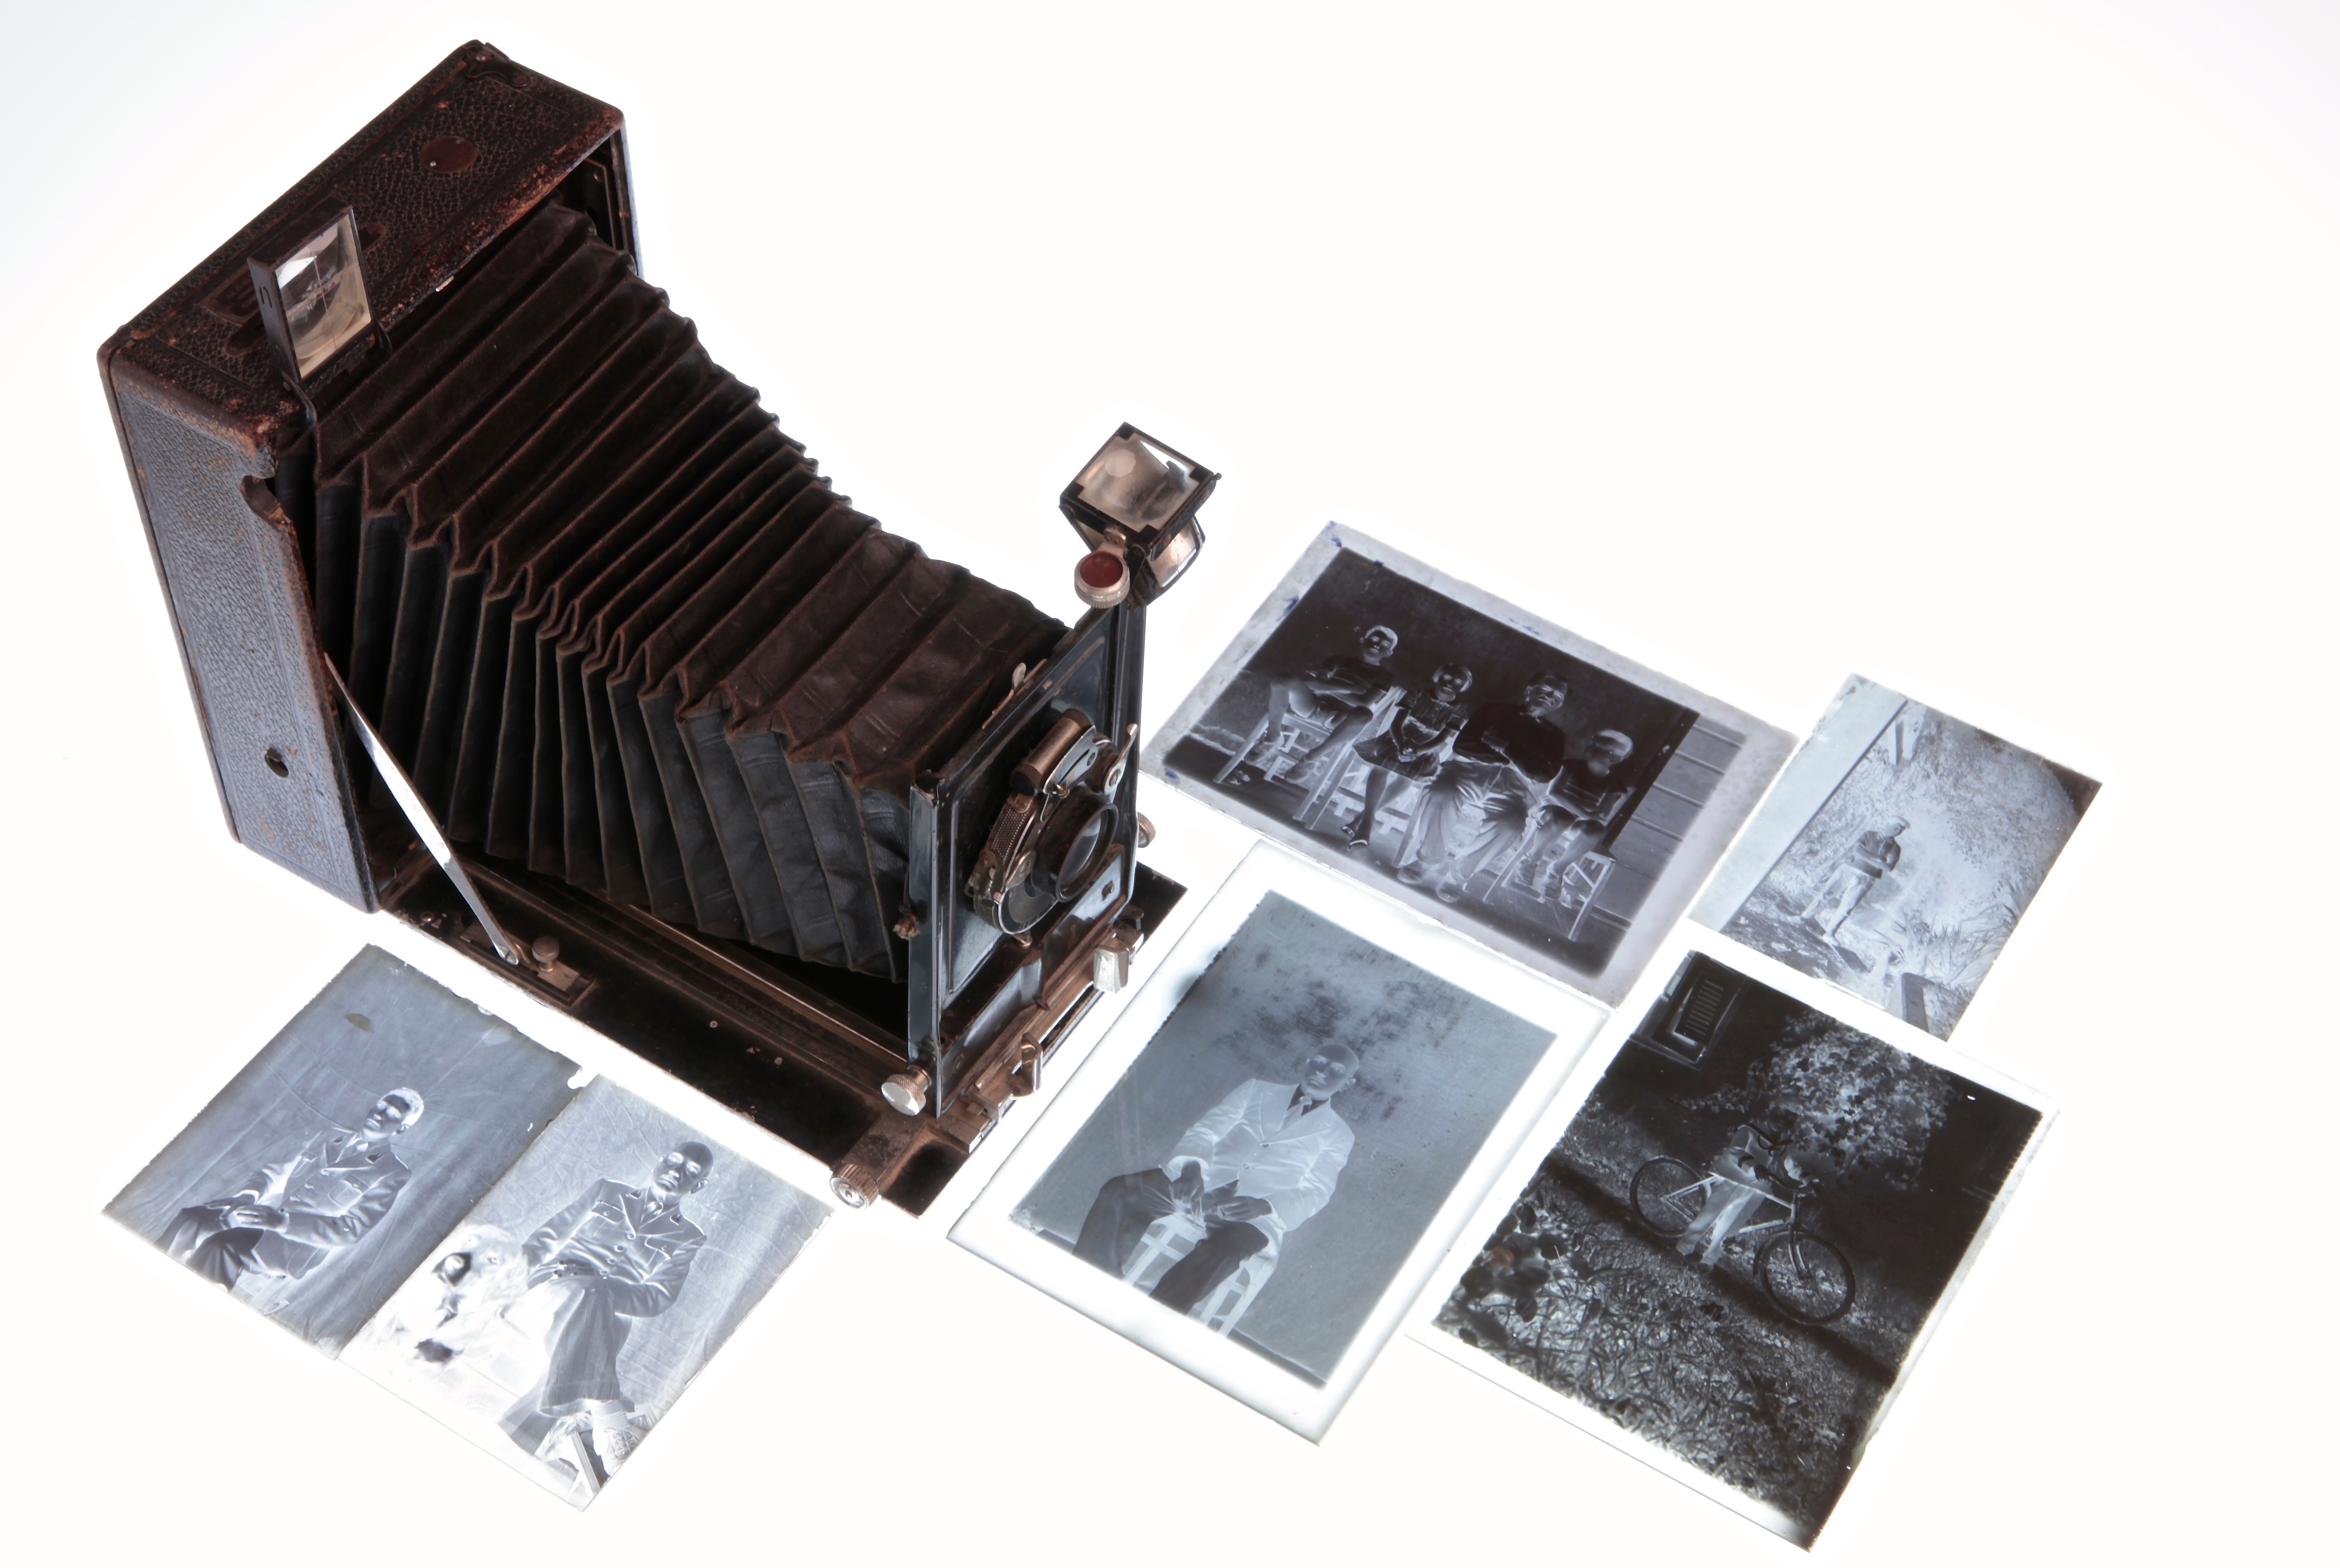 Des négatifs photos et un tirage sur papier à coté d'un appareil photo moyen format à souflet.